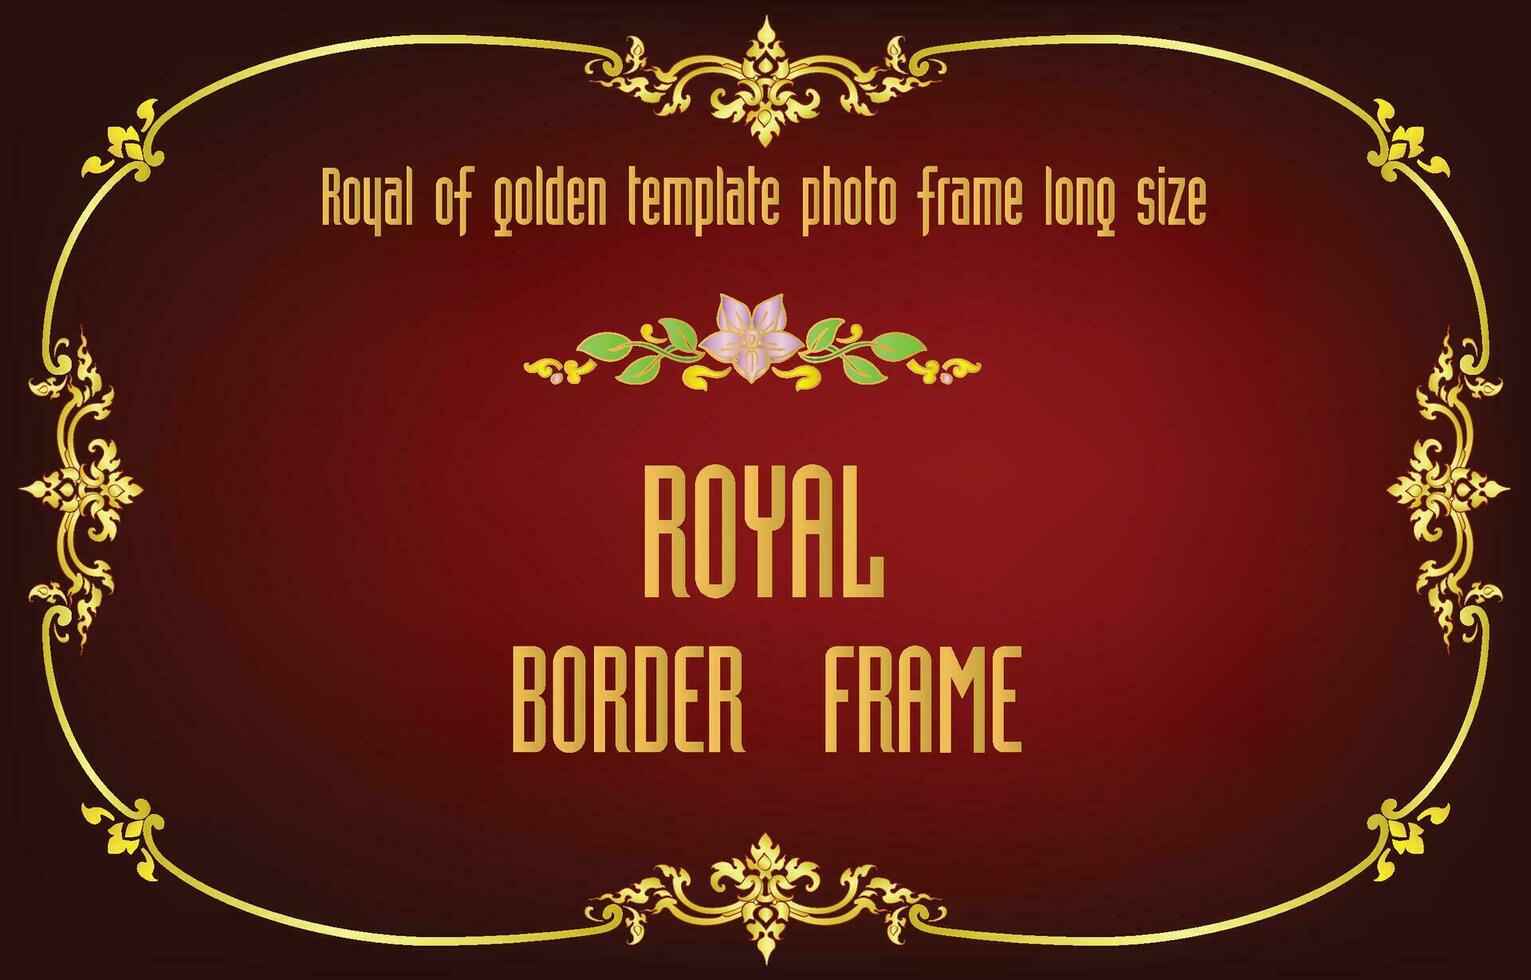 Decorative vintage floral frames and Certificate border vector